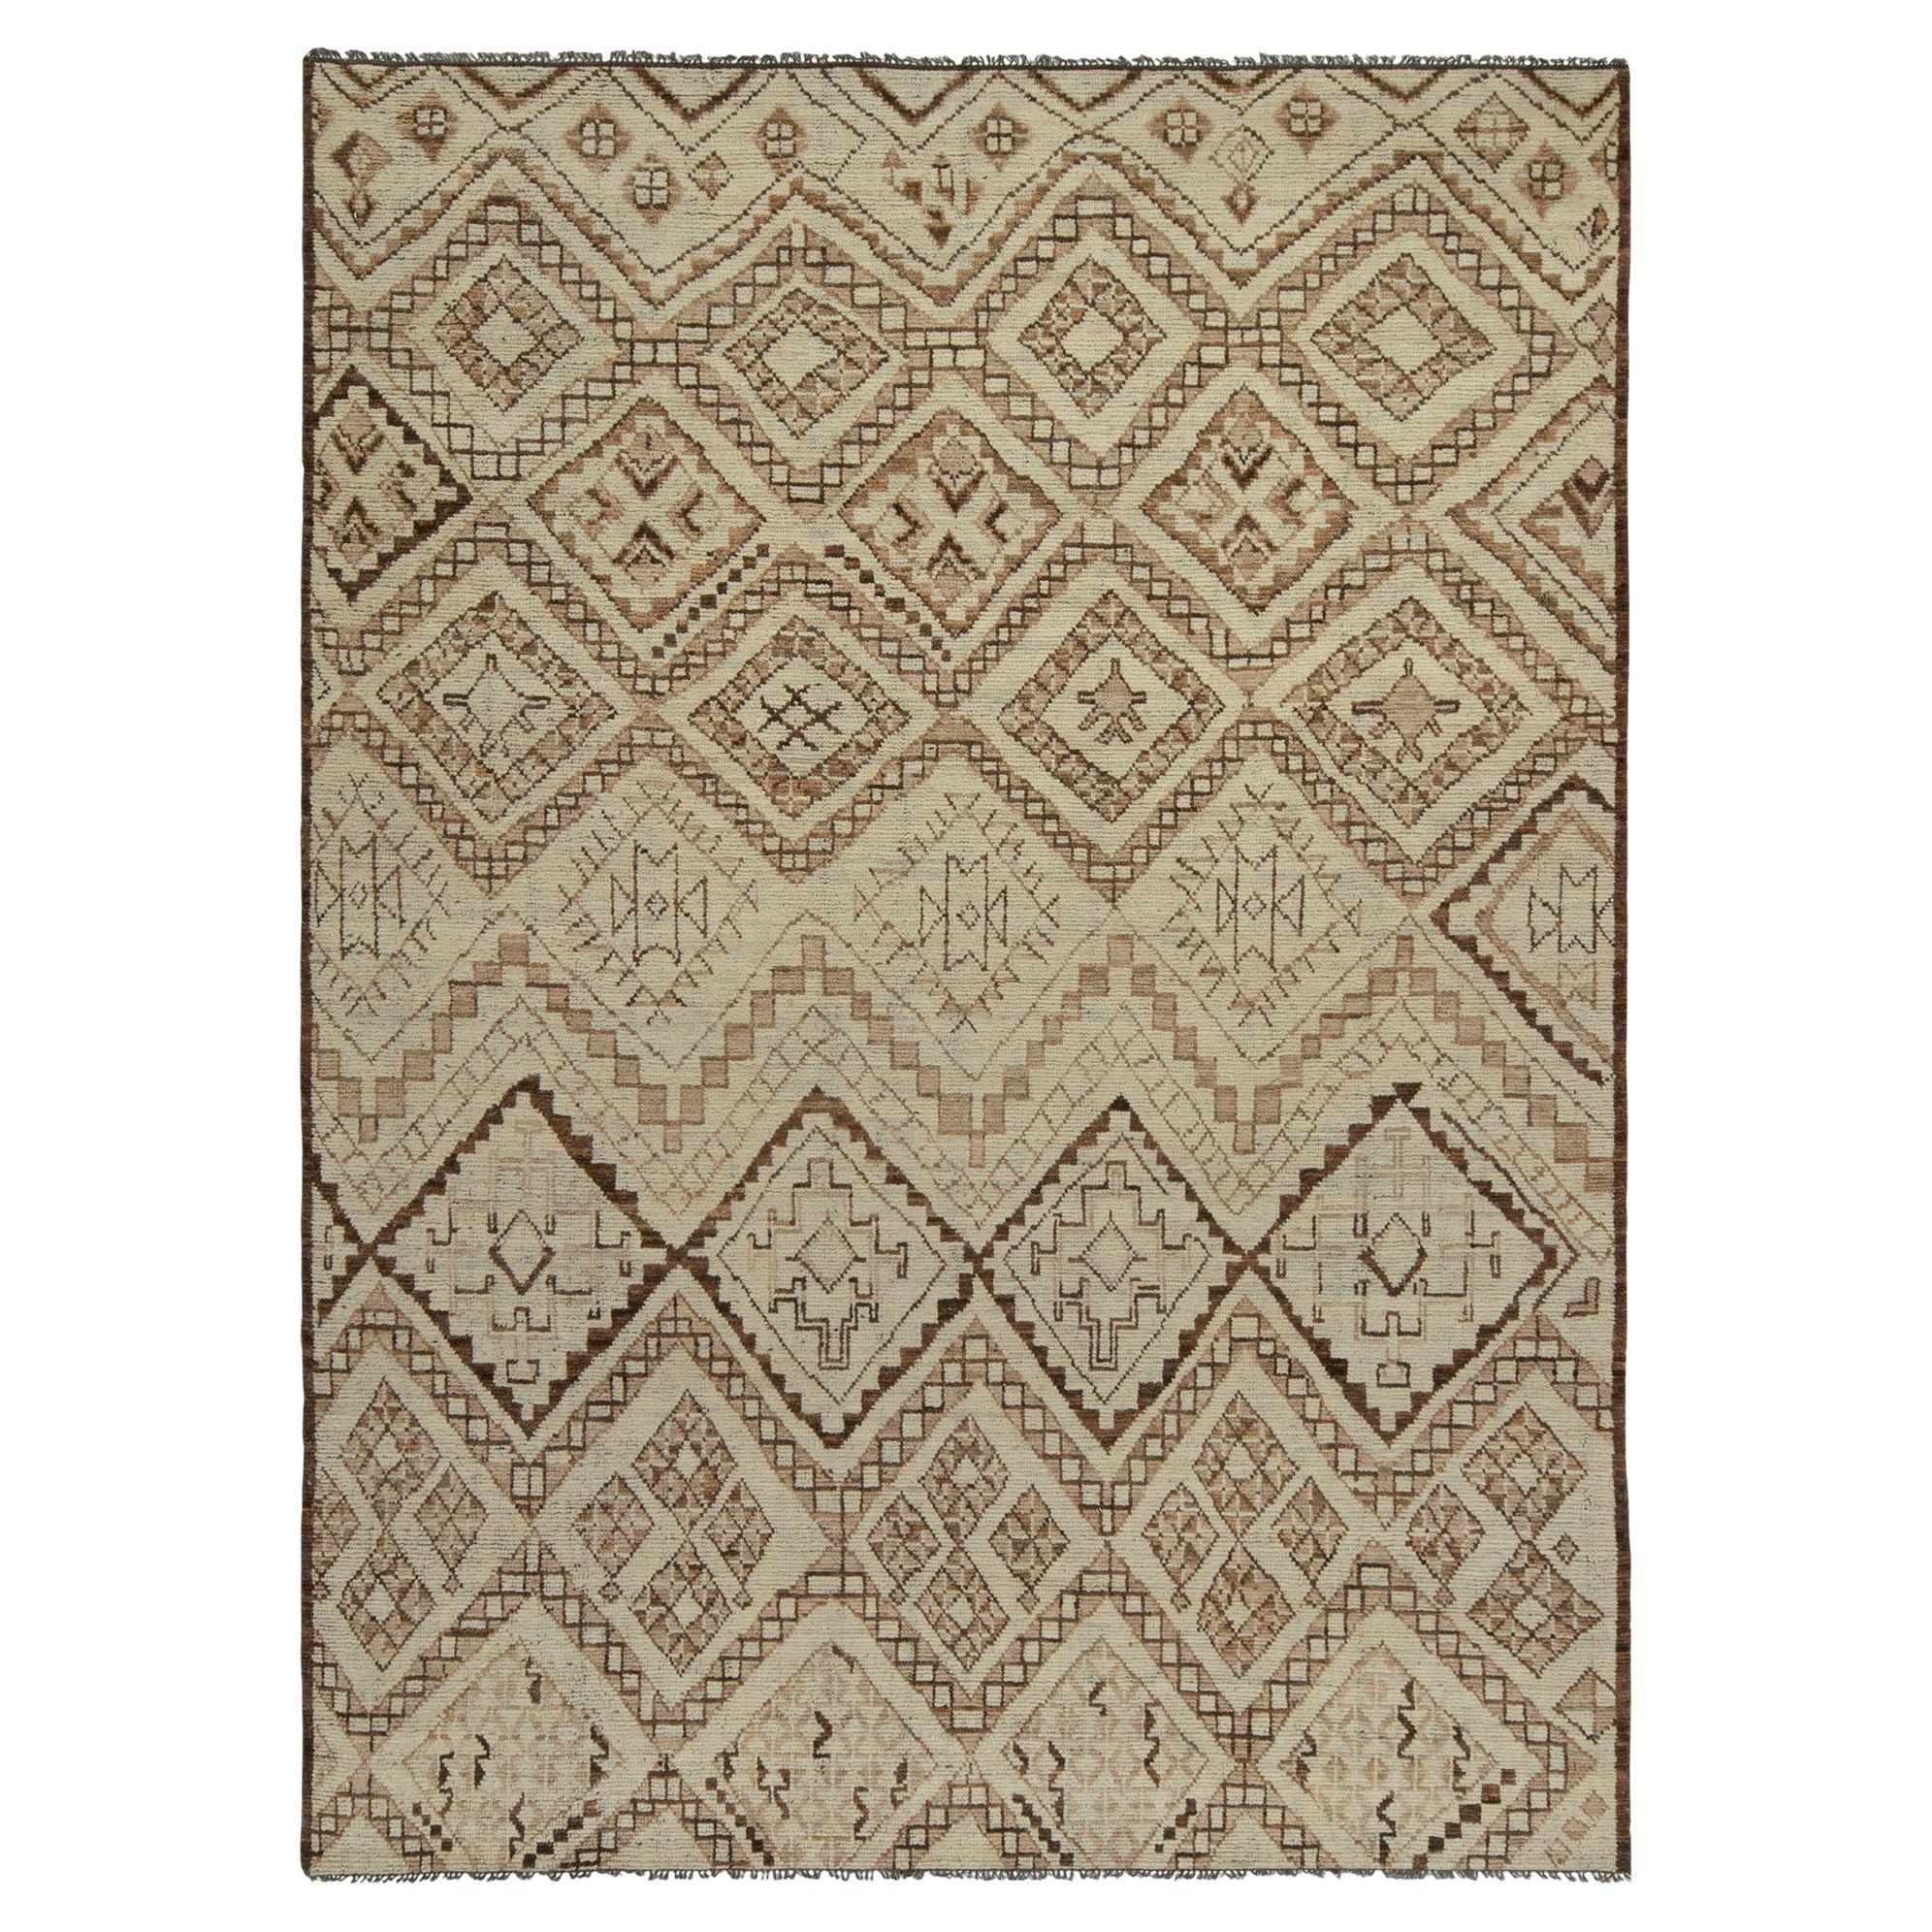 Marokkanischer Teppich von Rug & Kilim in Beige-Braun mit geometrischen Stammesmustern